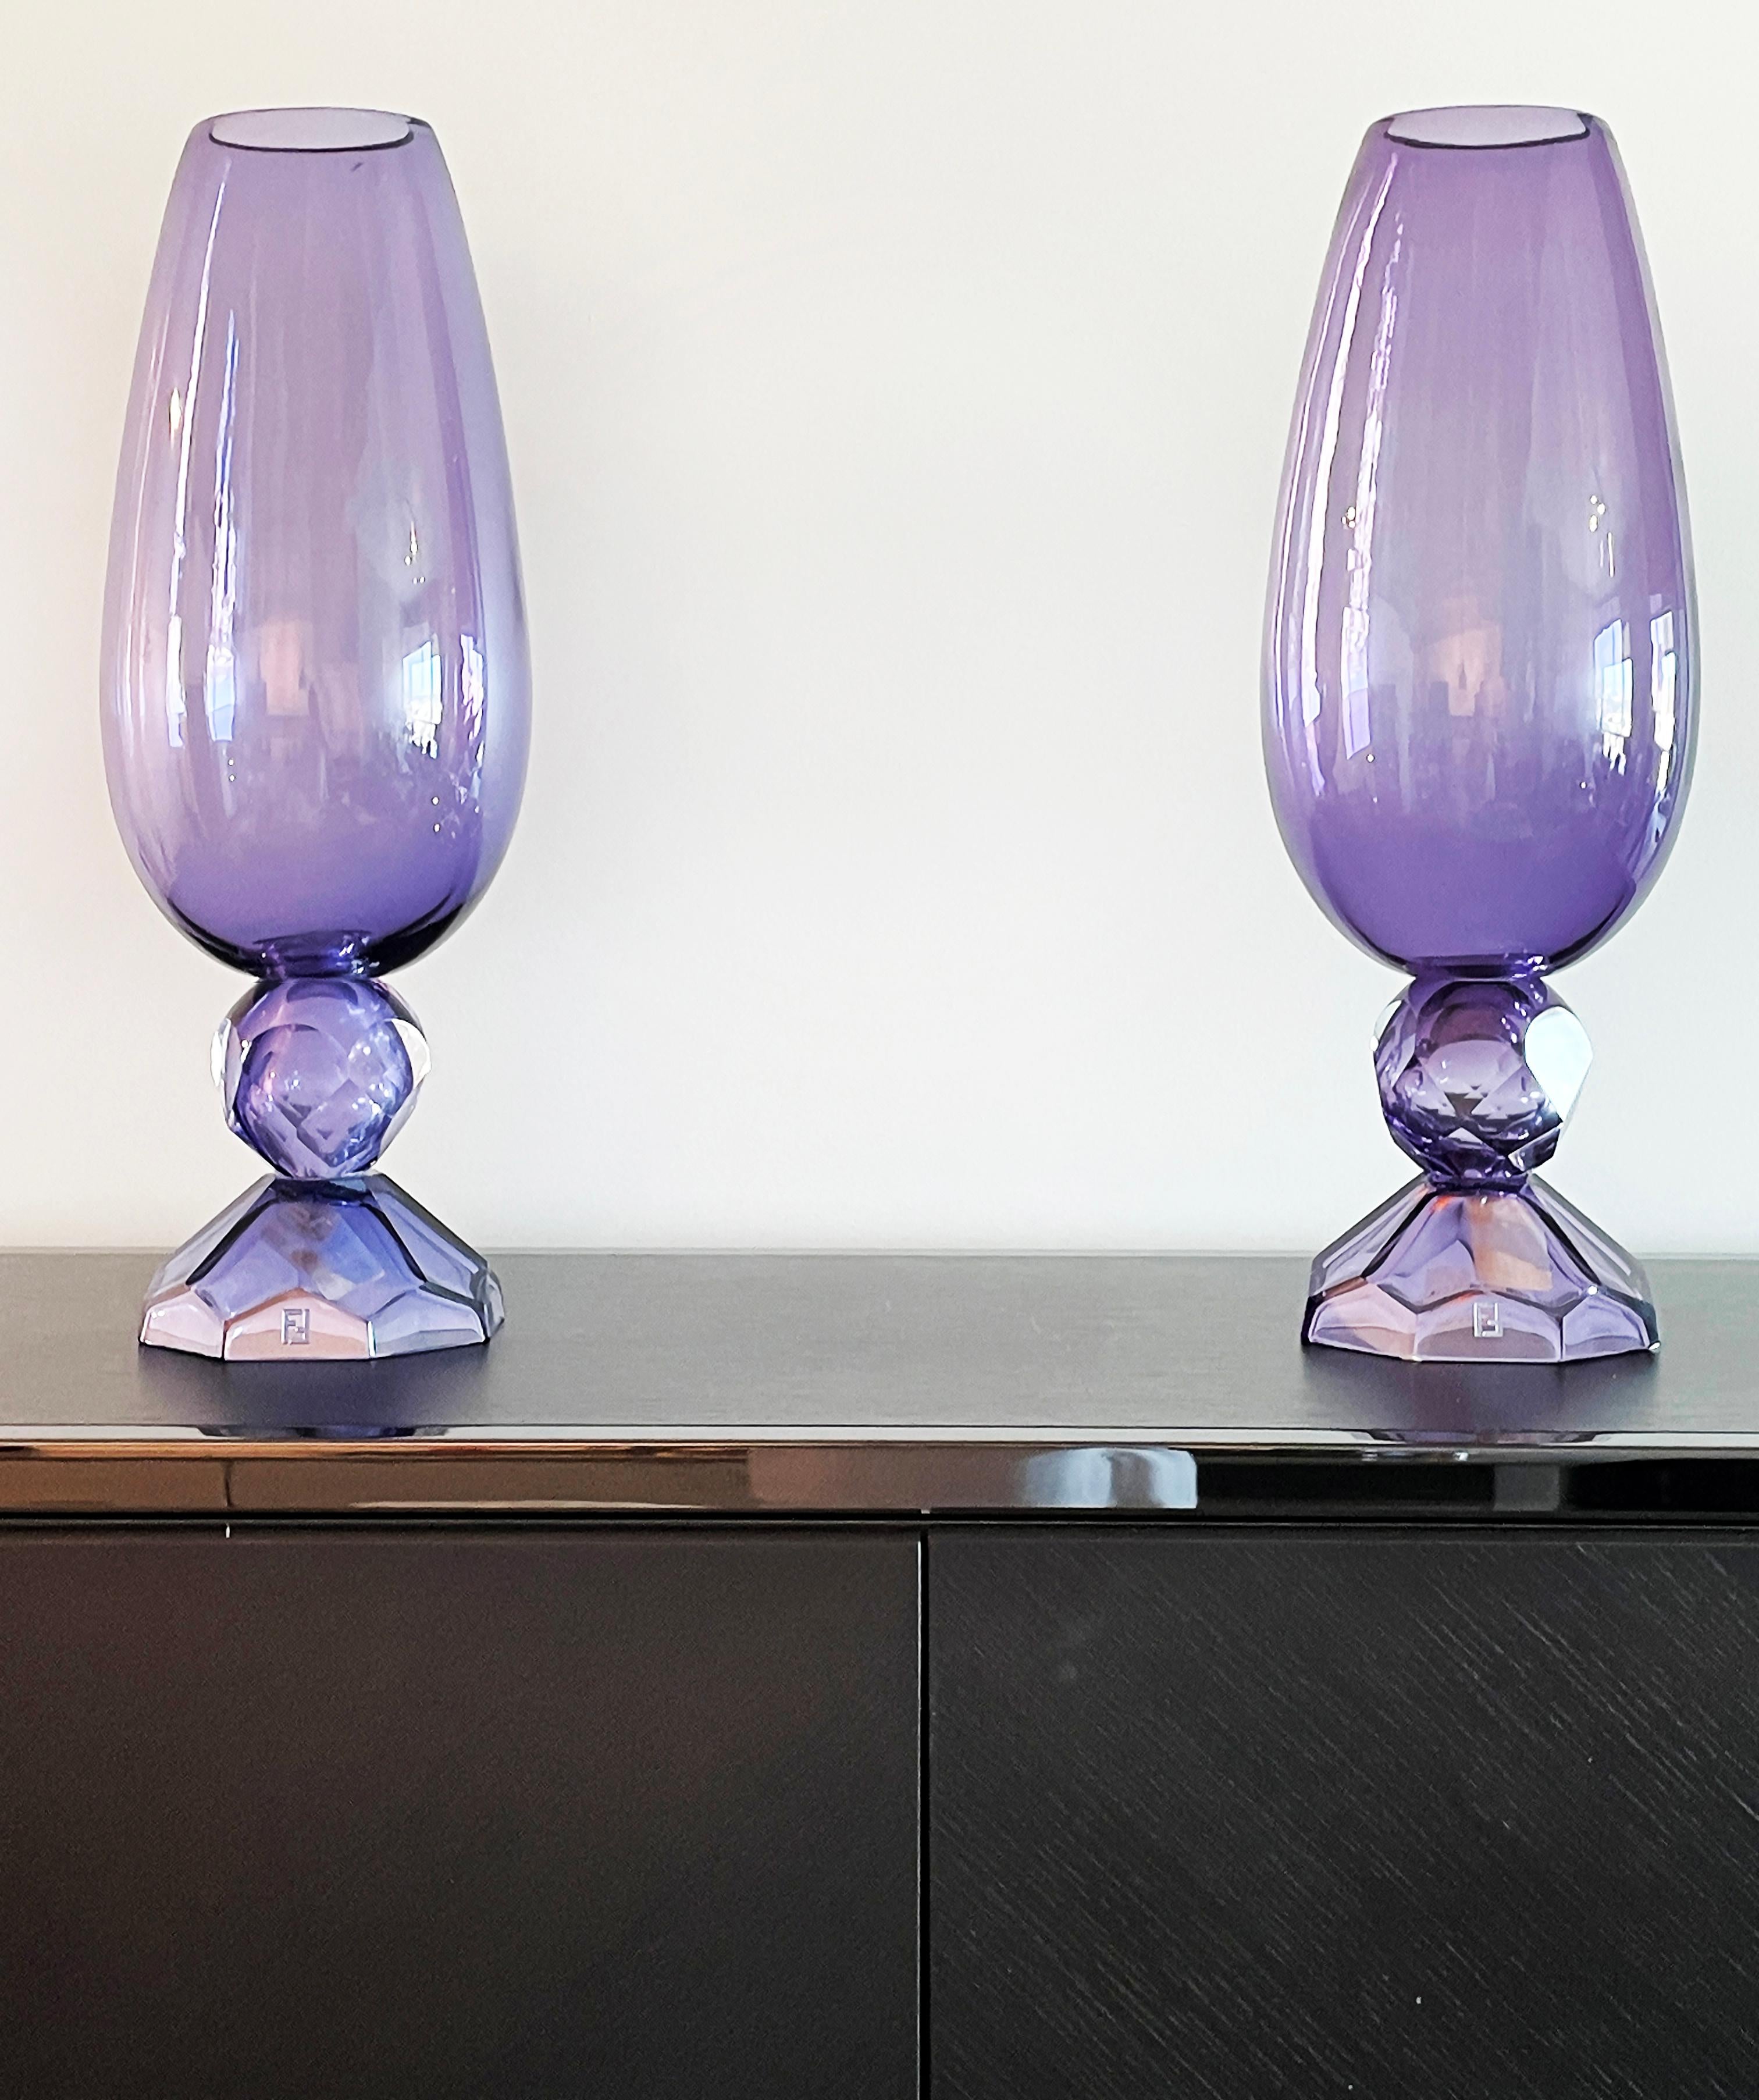 Contemporary Fendi Casa Hand-blown Vetri Glass Artístico Murano Vases, Amethyst Faceted Cut  For Sale